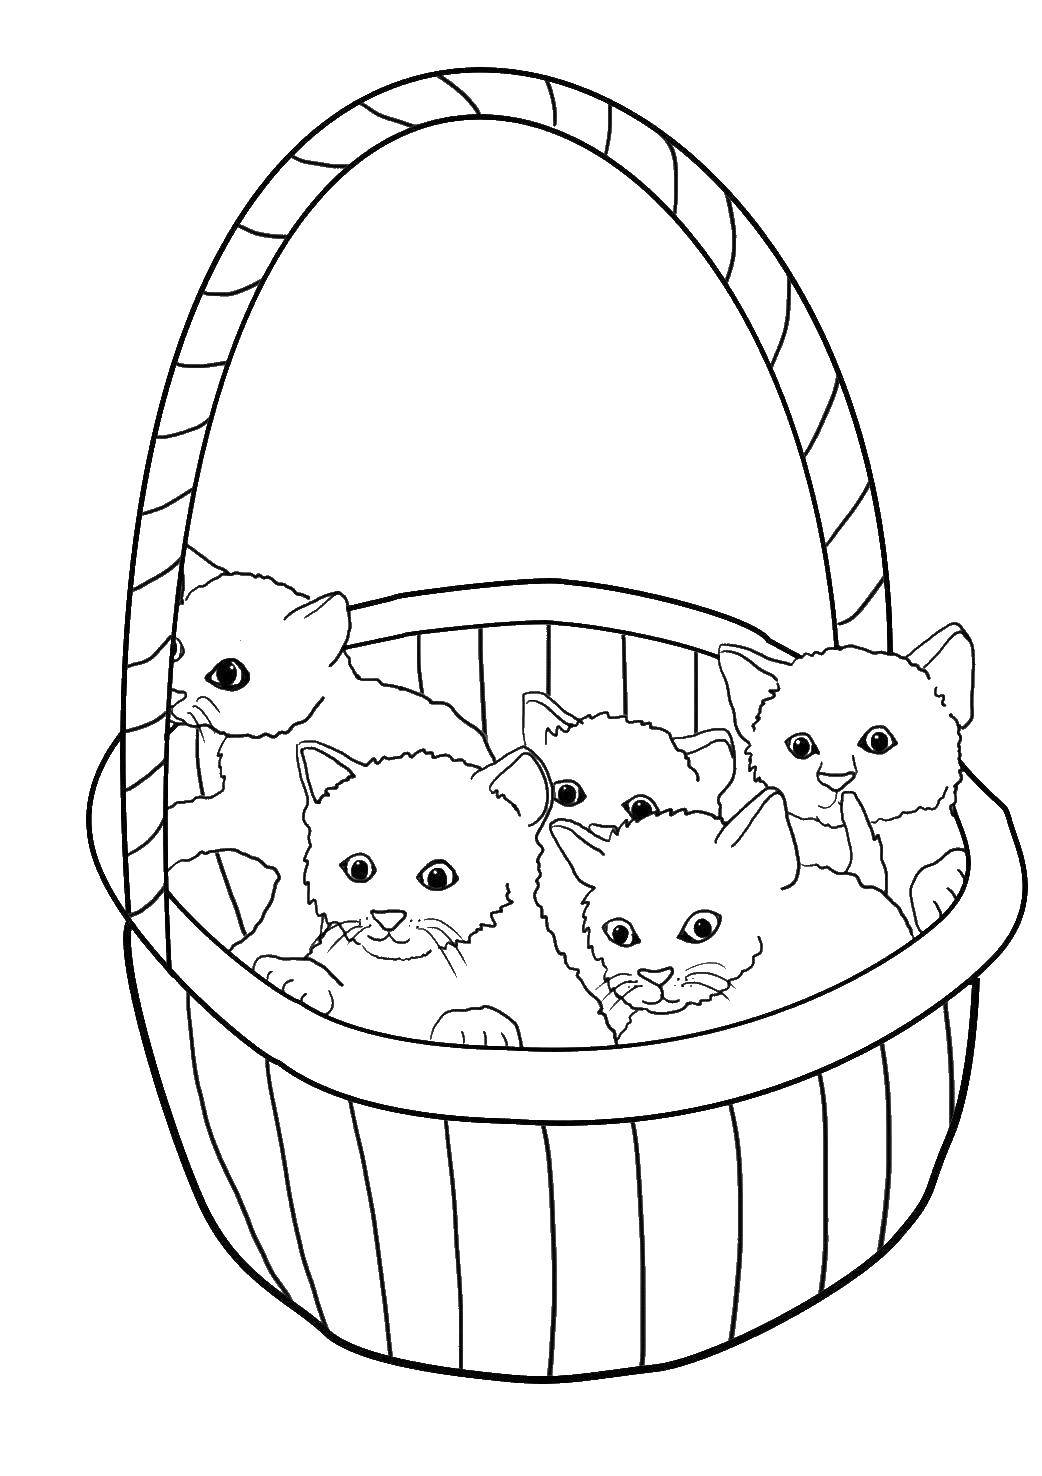 Название: Раскраска Корзинка с котятами. Категория: Коты и котята. Теги: Животные, котята, корзинка.